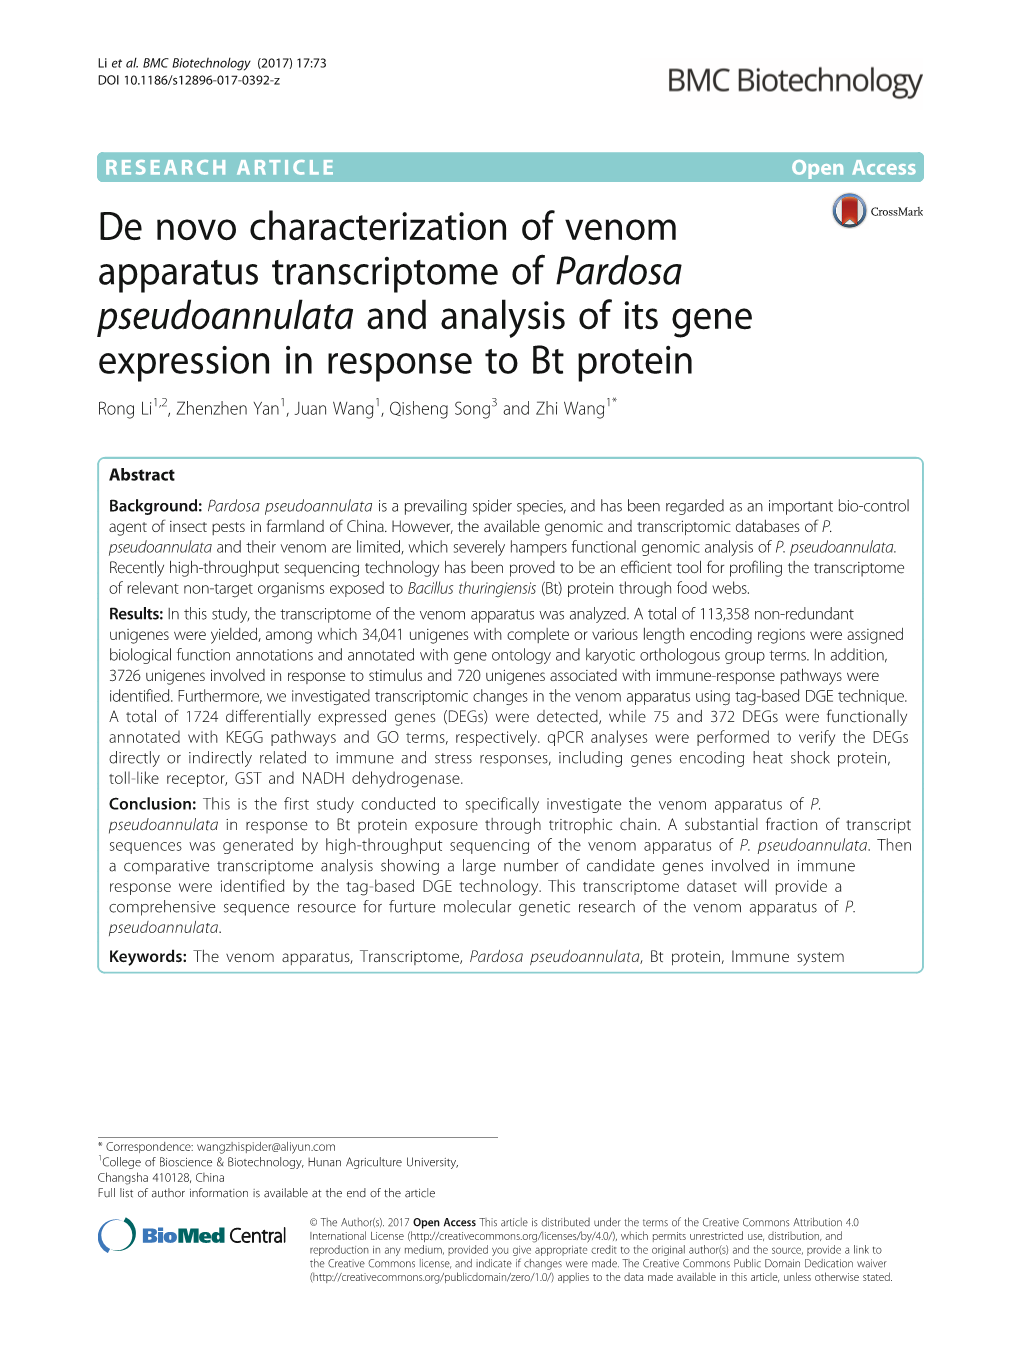 De Novo Characterization of Venom Apparatus Transcriptome of Pardosa Pseudoannulata and Analysis of Its Gene Expression in Respo